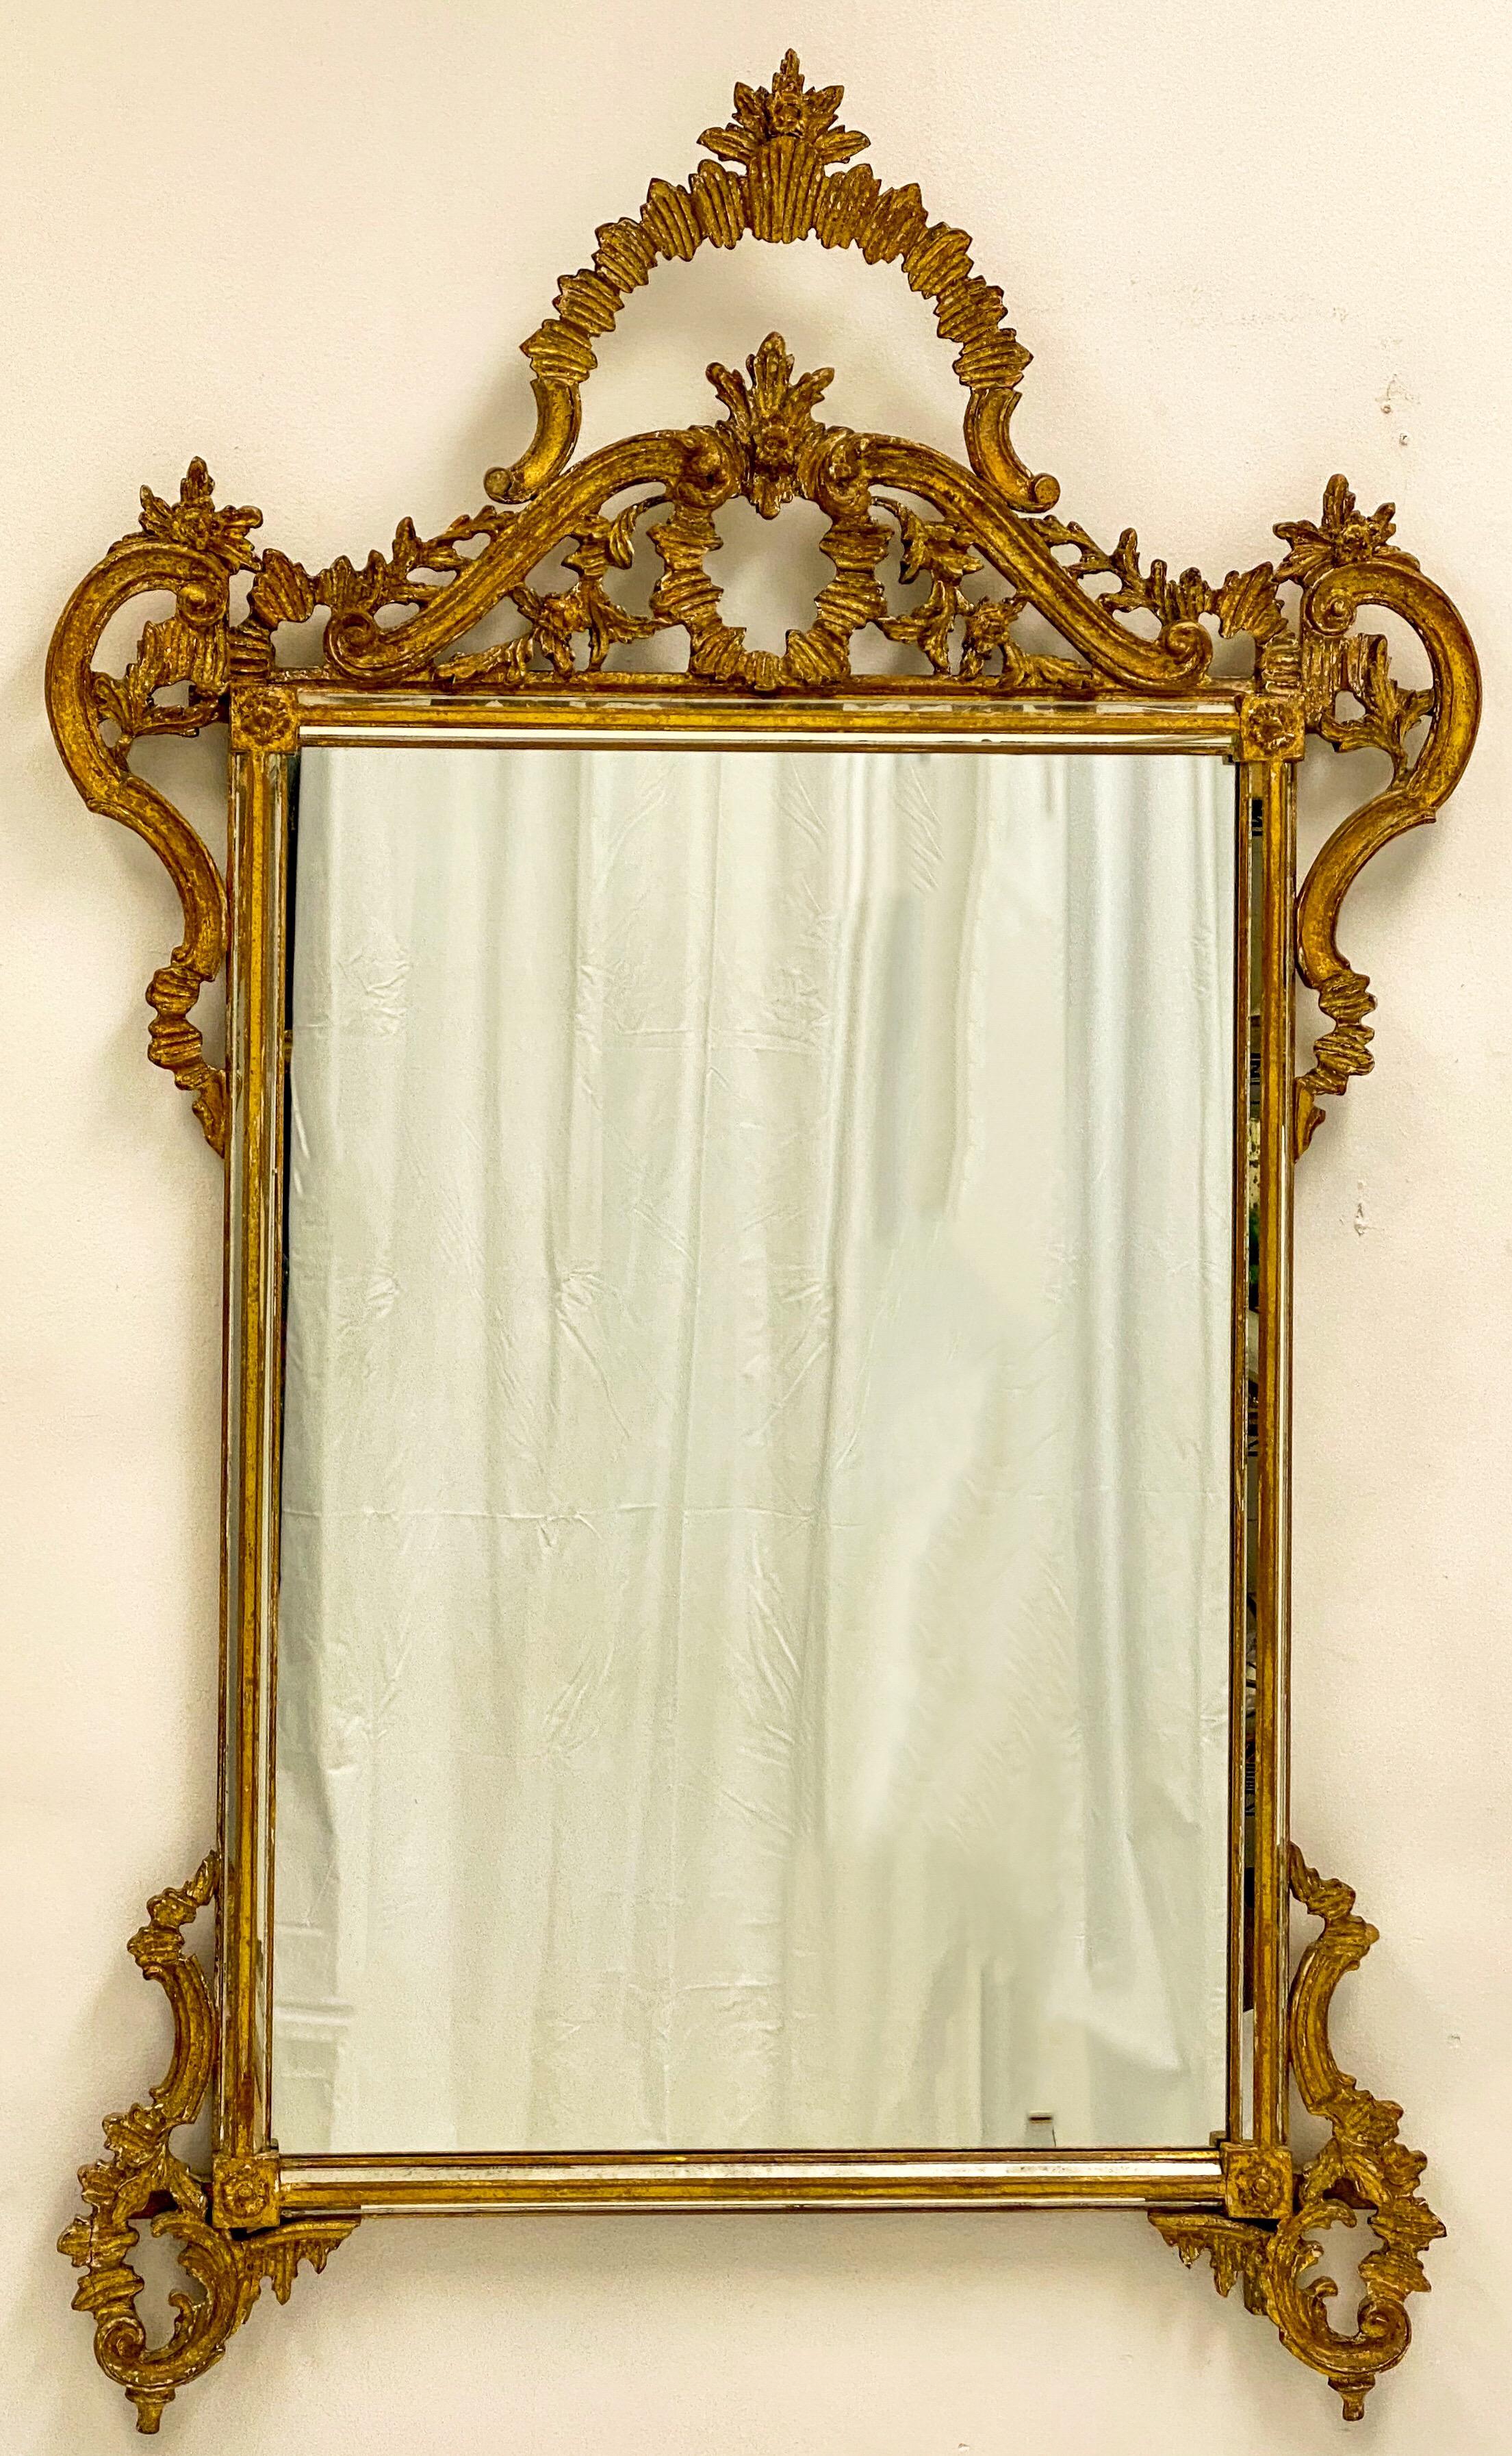 Dies ist eine italienische geschnitzt vergoldetem Holz Rokoko-Stil Spiegel von Labarge. Es ist markiert und zeigt einige leichte Alter Verschleiß an der verzierten Rahmen.